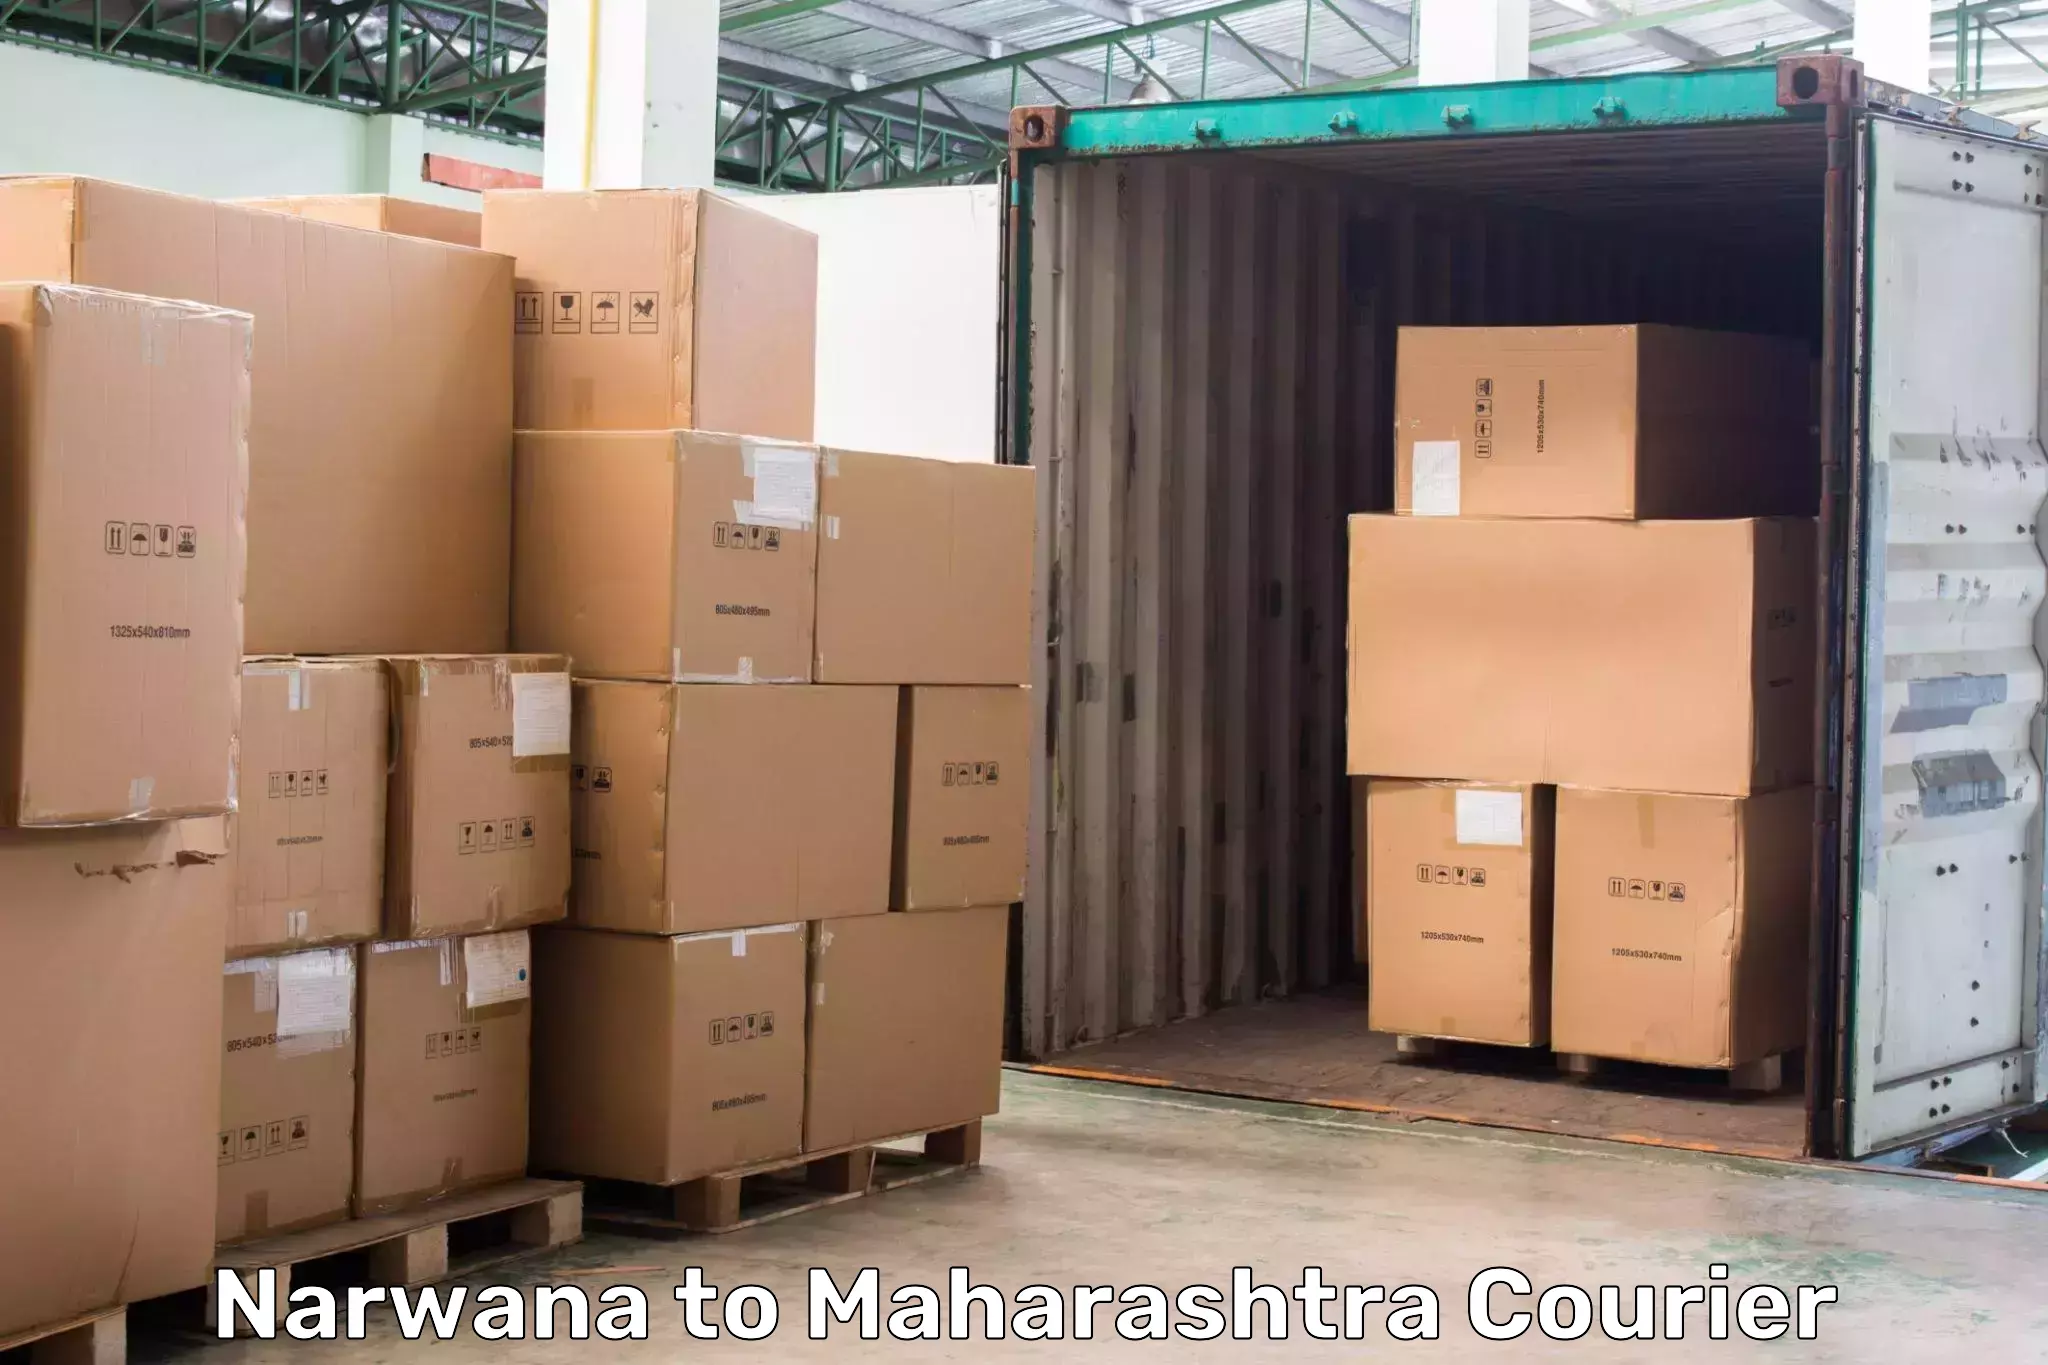 Express courier facilities Narwana to Maharashtra